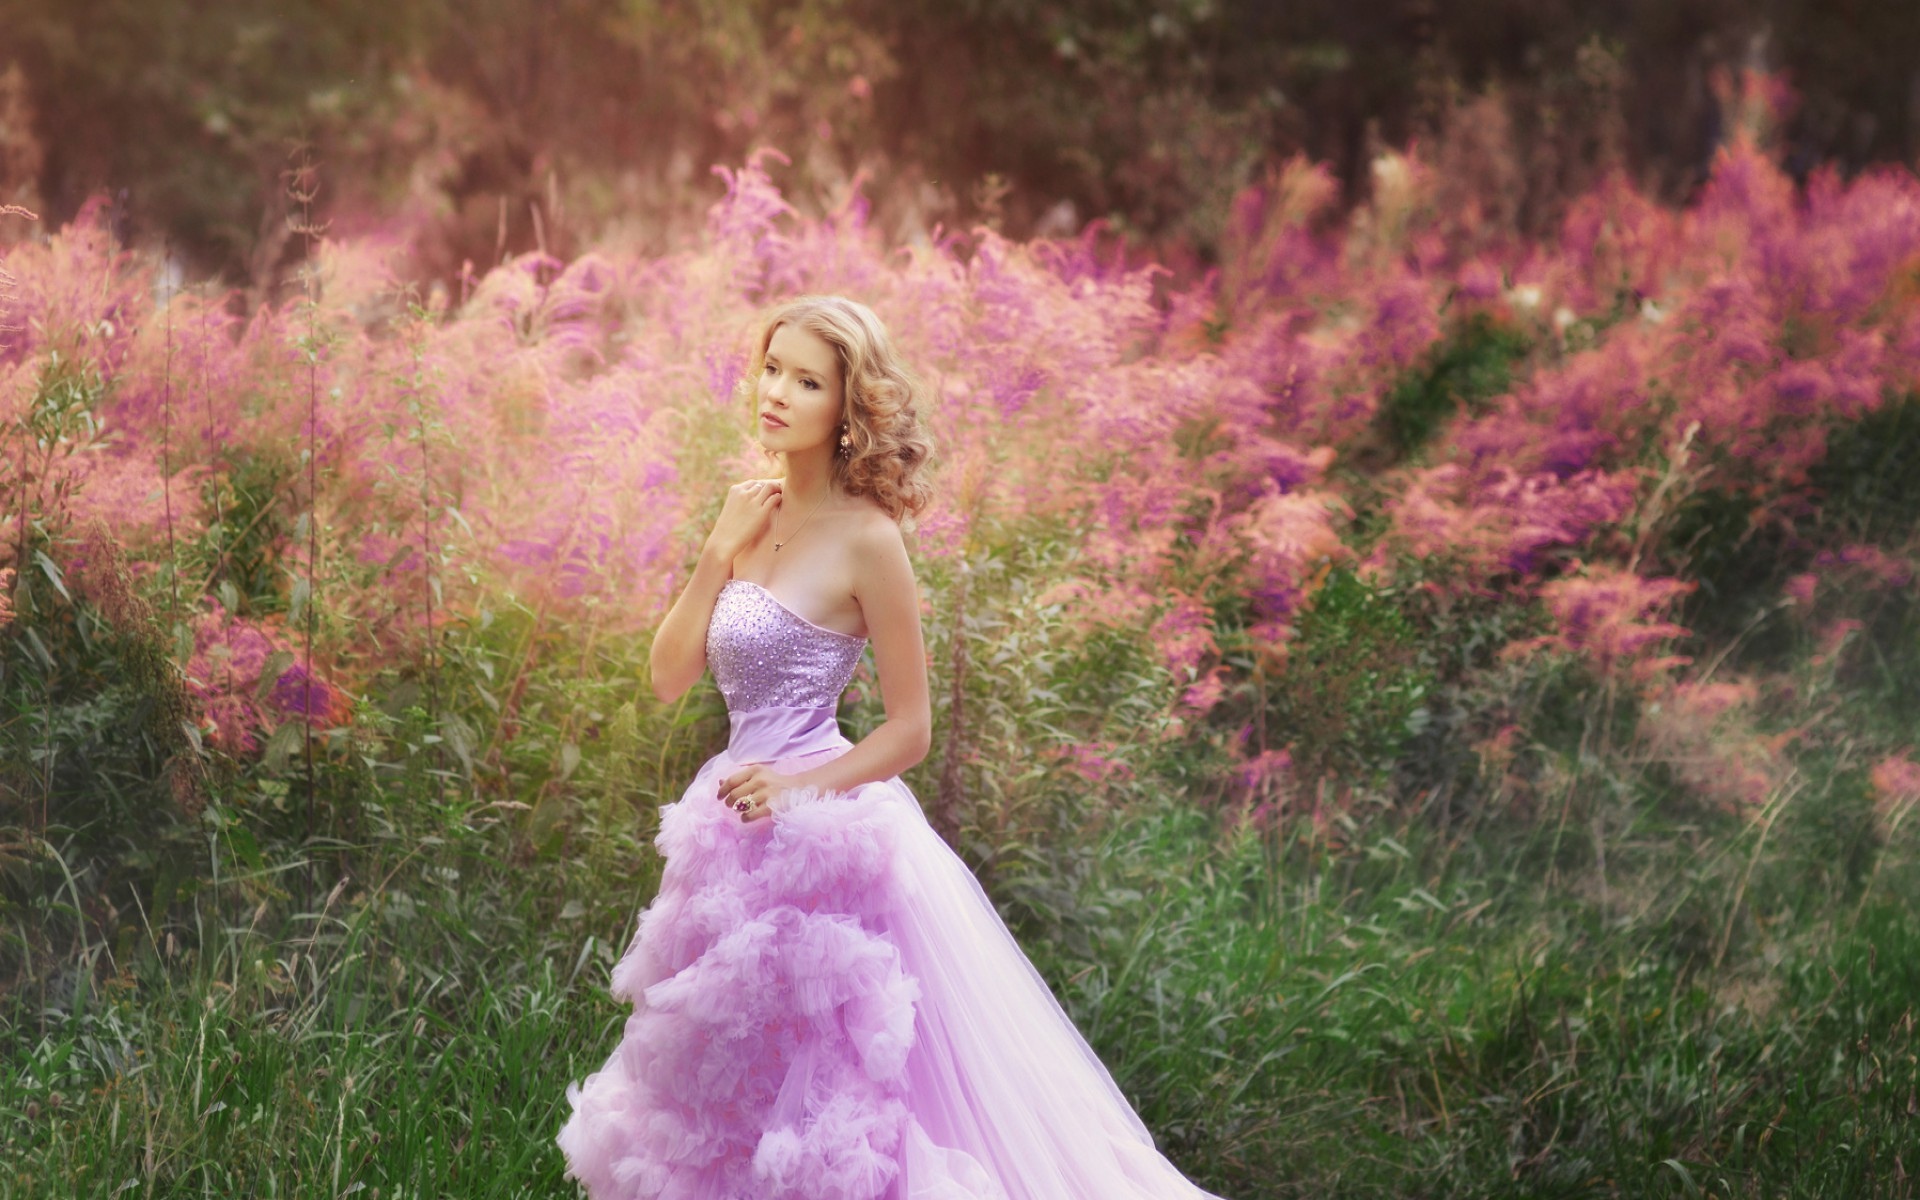 Молодая красотка с тату сняла розовое платье на природе